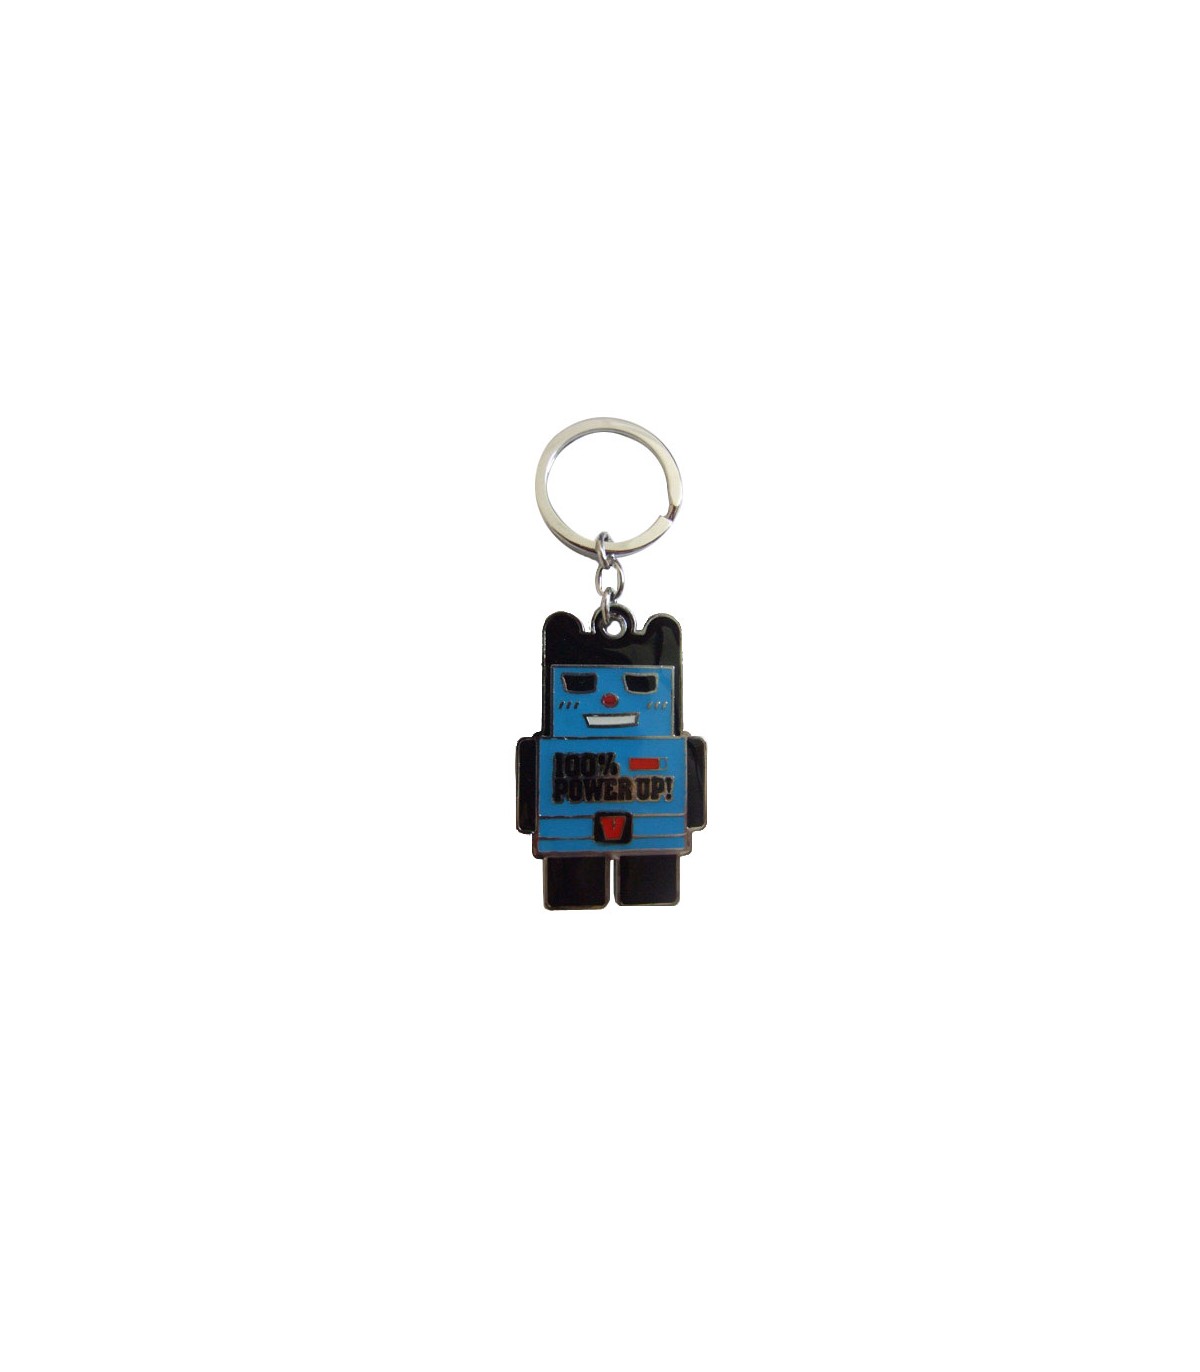 Porte-clés robot 100% power up bleu Happy Shop|Objets Tendance